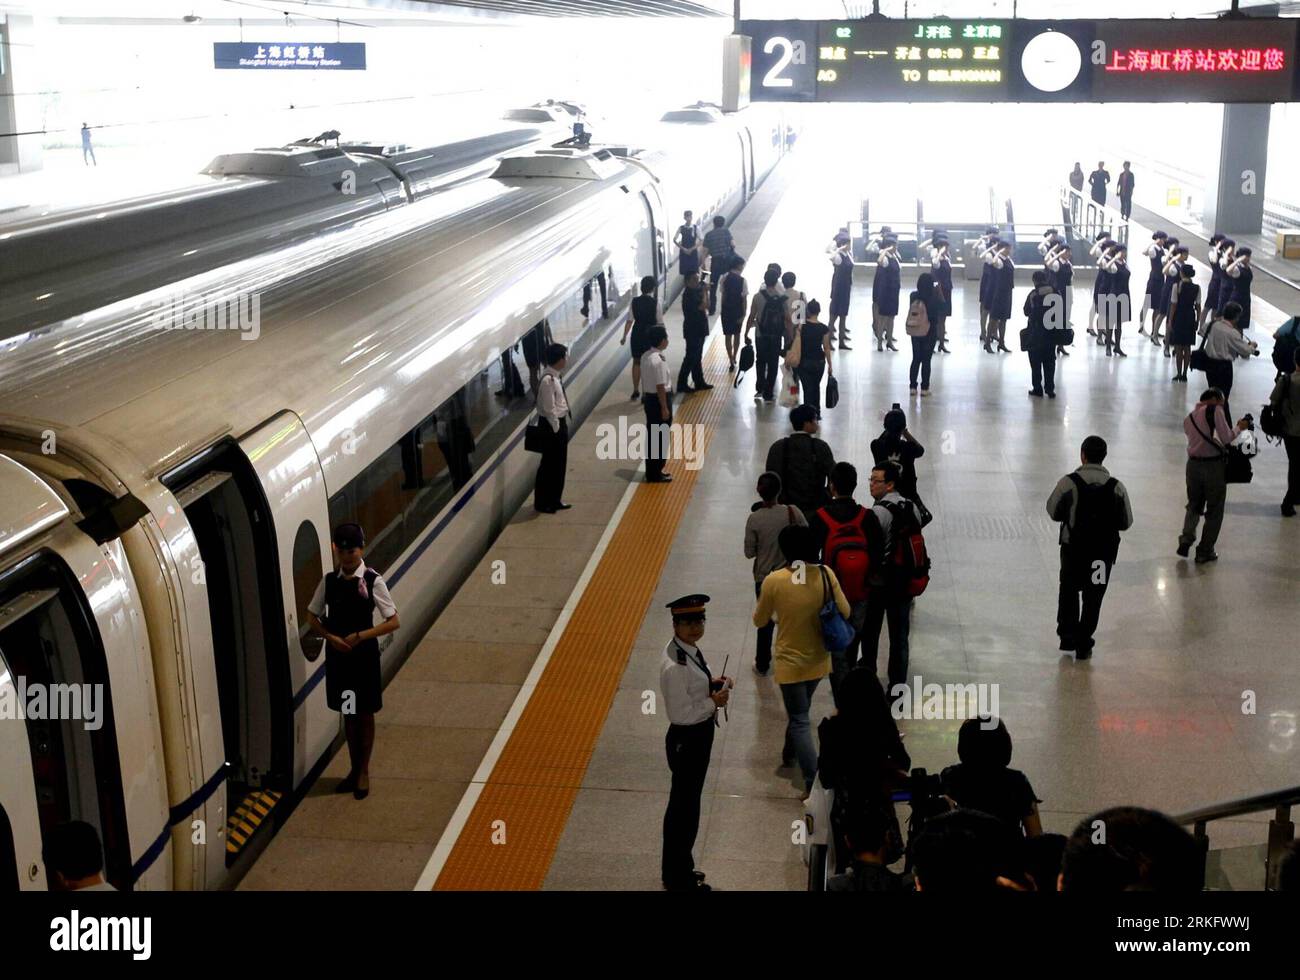 Bildnummer: 55463531 Datum: 16.06.2011 Copyright: imago/Xinhua (110616) -- SHANGHAI, 16. Juni 2011 (Xinhua) -- der CRH380A-Zug, der auf der Hochgeschwindigkeitsbahn Peking-Shanghai verbindet, dockt am Hongqiao-Bahnhof in Shanghai an, bevor er am 16. Juni 2011 in die Probefahrt geht. Der Hochgeschwindigkeitszug, der Peking, die Hauptstadt Chinas, mit Shanghai, der ostchinesischen Gemeinde, verbindet, wird offiziell Ende Juni beginnen. (Xinhua/Chen Fei) (xzj) CHINA-HIGH SPEED RAILWAY-EXPERIENCE (CN) PUBLICATIONxNOTxINxCHN Gesellschaft Fotostory Verkehr Bahn Hochgeschwindigkeitszug xub 2011 que Stockfoto